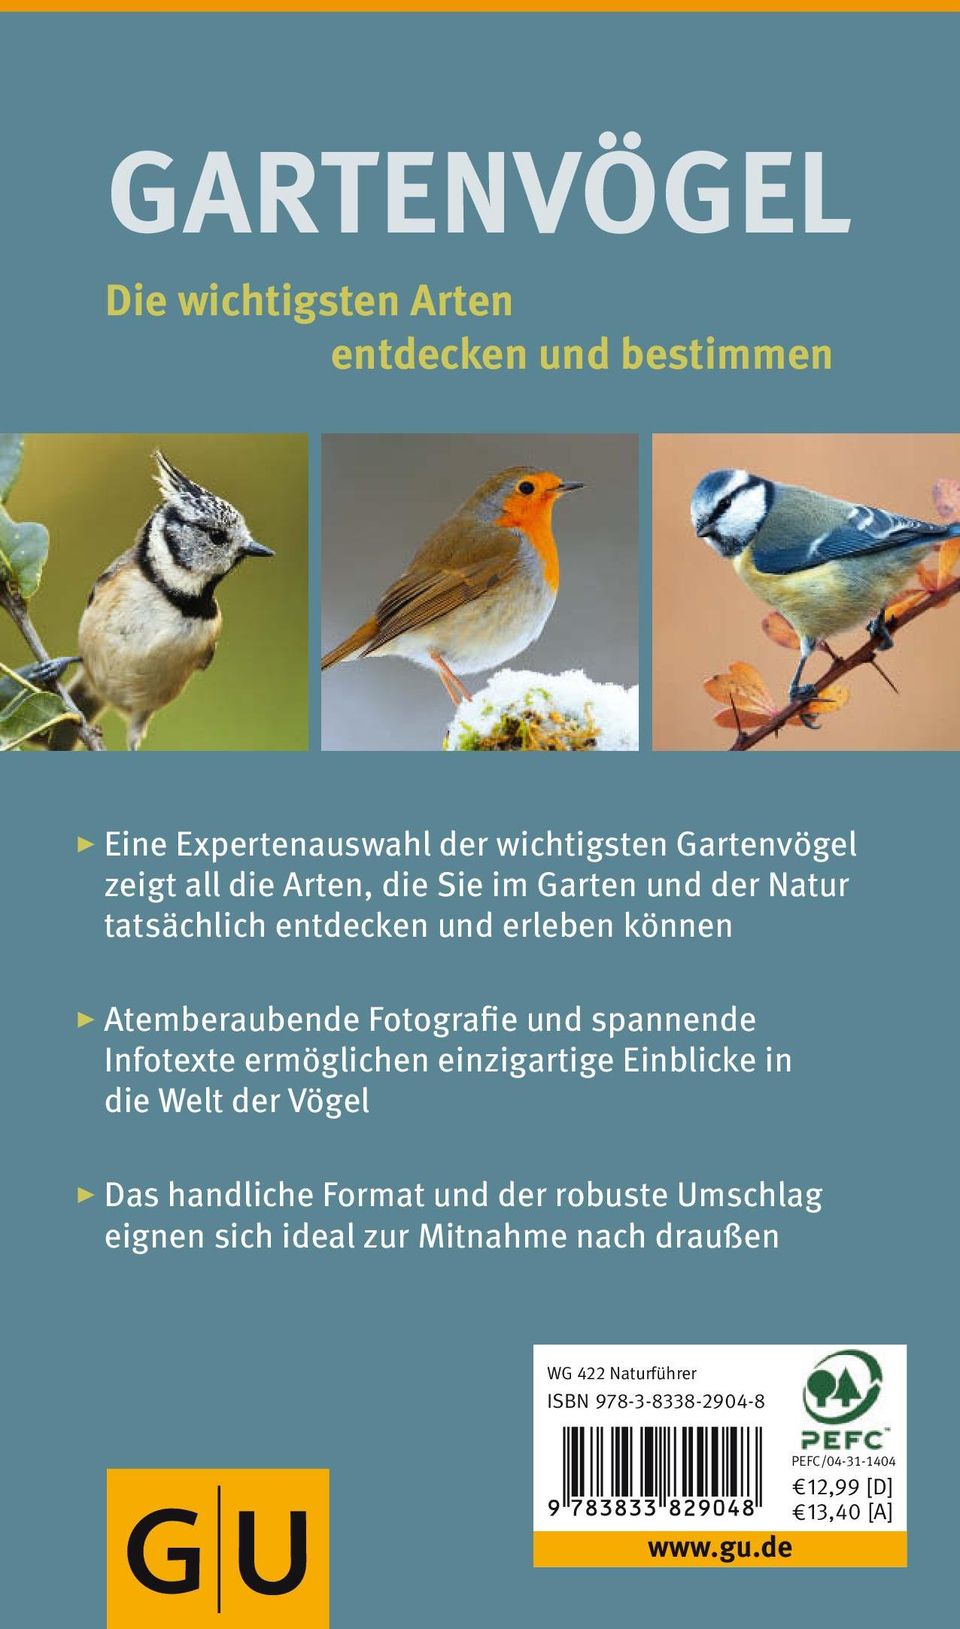 Infotexte ermöglichen einzigartige Einblicke in die Welt der Vögel Das handliche Format und der robuste Umschlag eignen